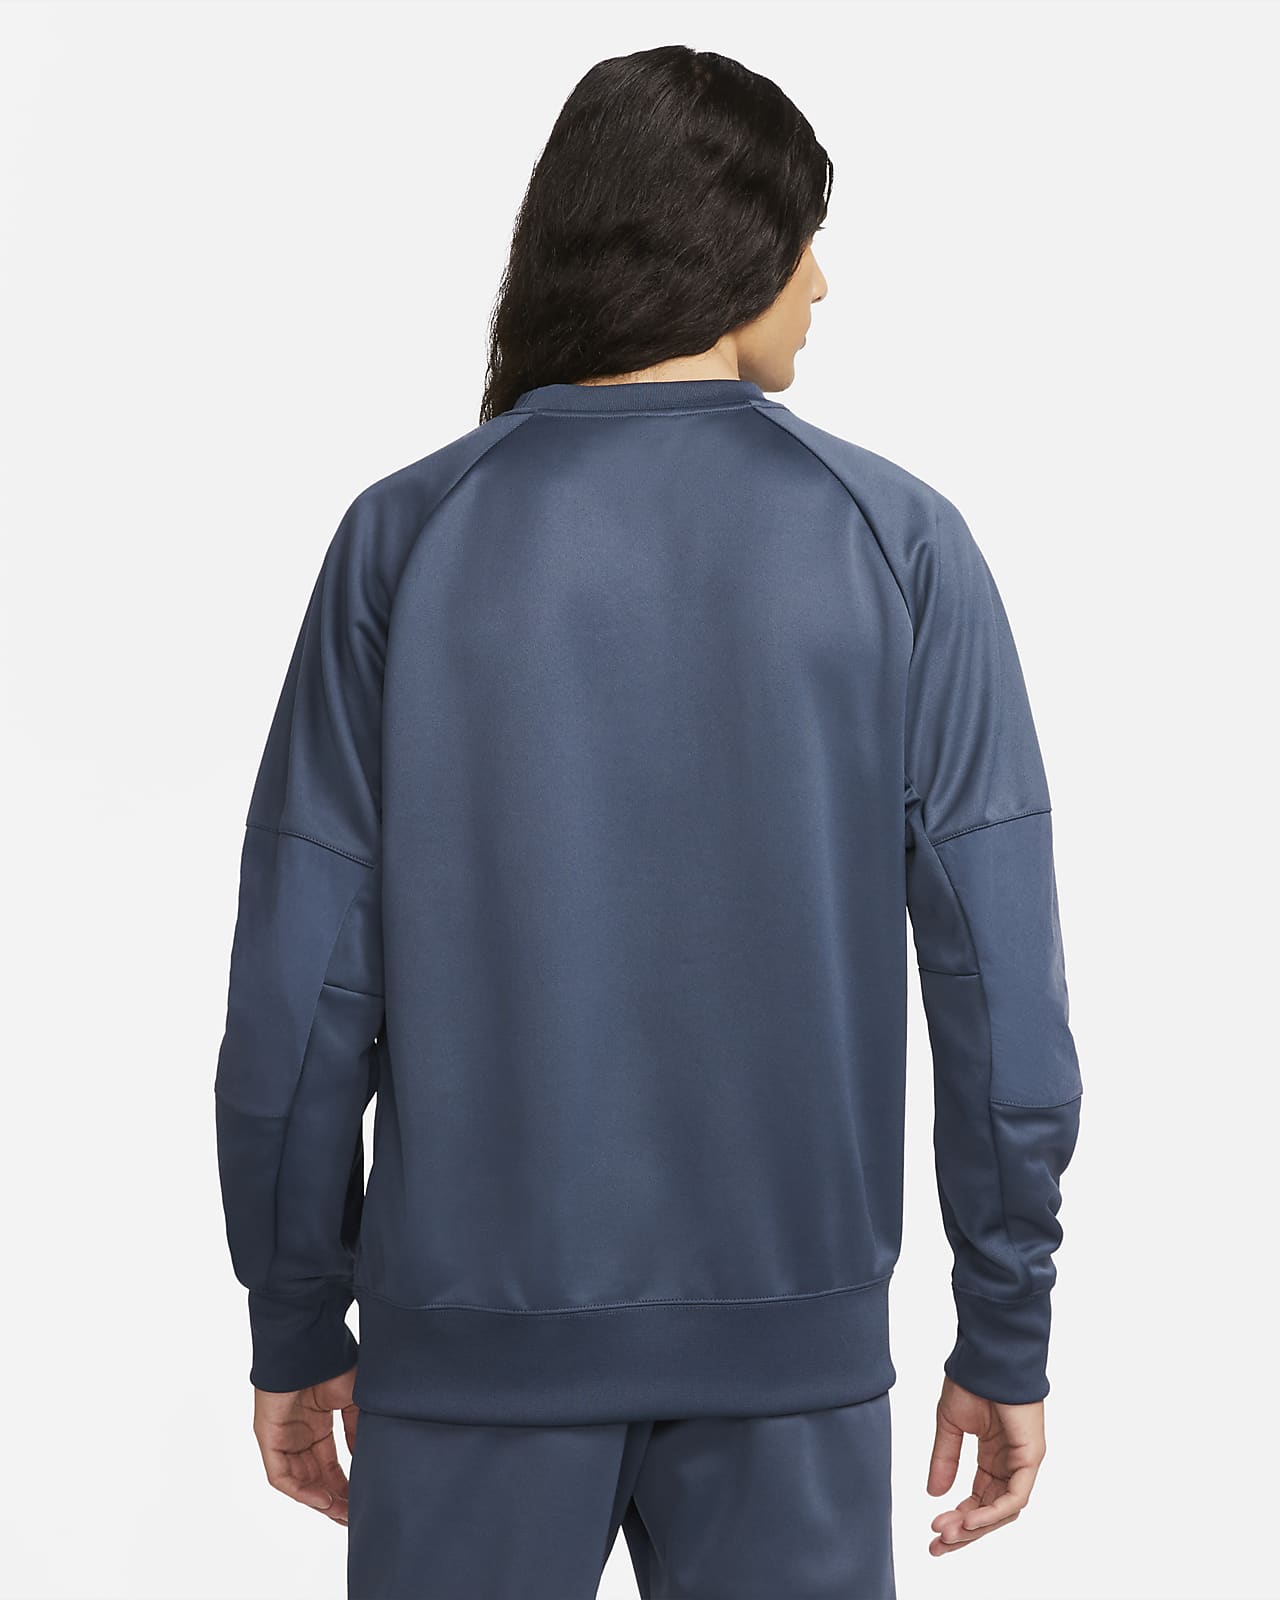 Nike Air Max Men's Sweatshirt. Nike LU